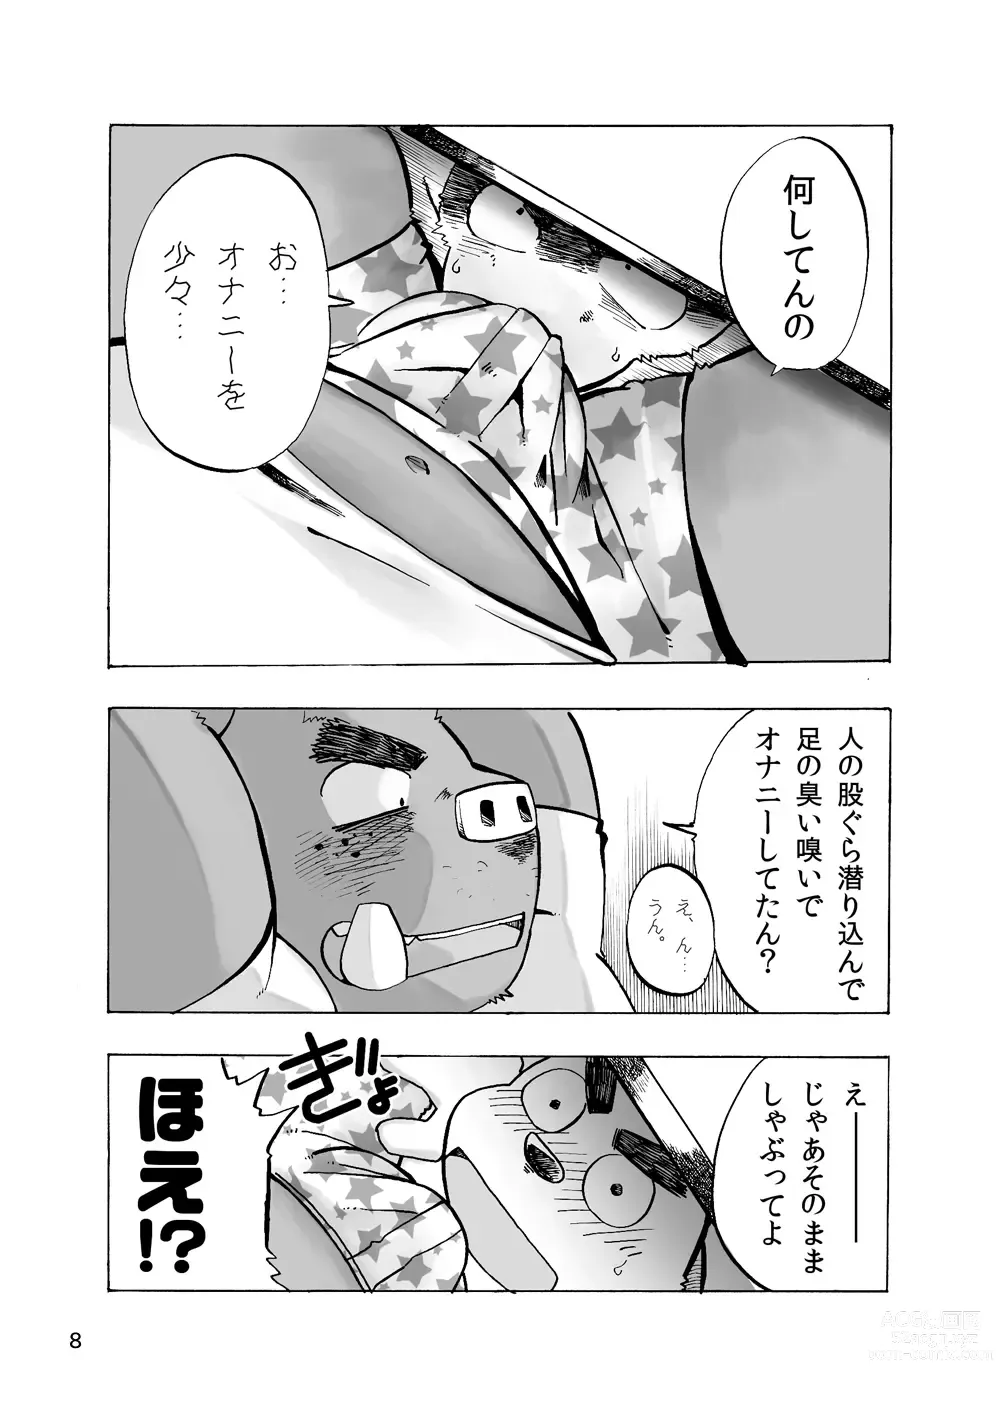 Page 8 of doujinshi 201 - Akushū shugi - Inogawa-kun to Inukawa-kun